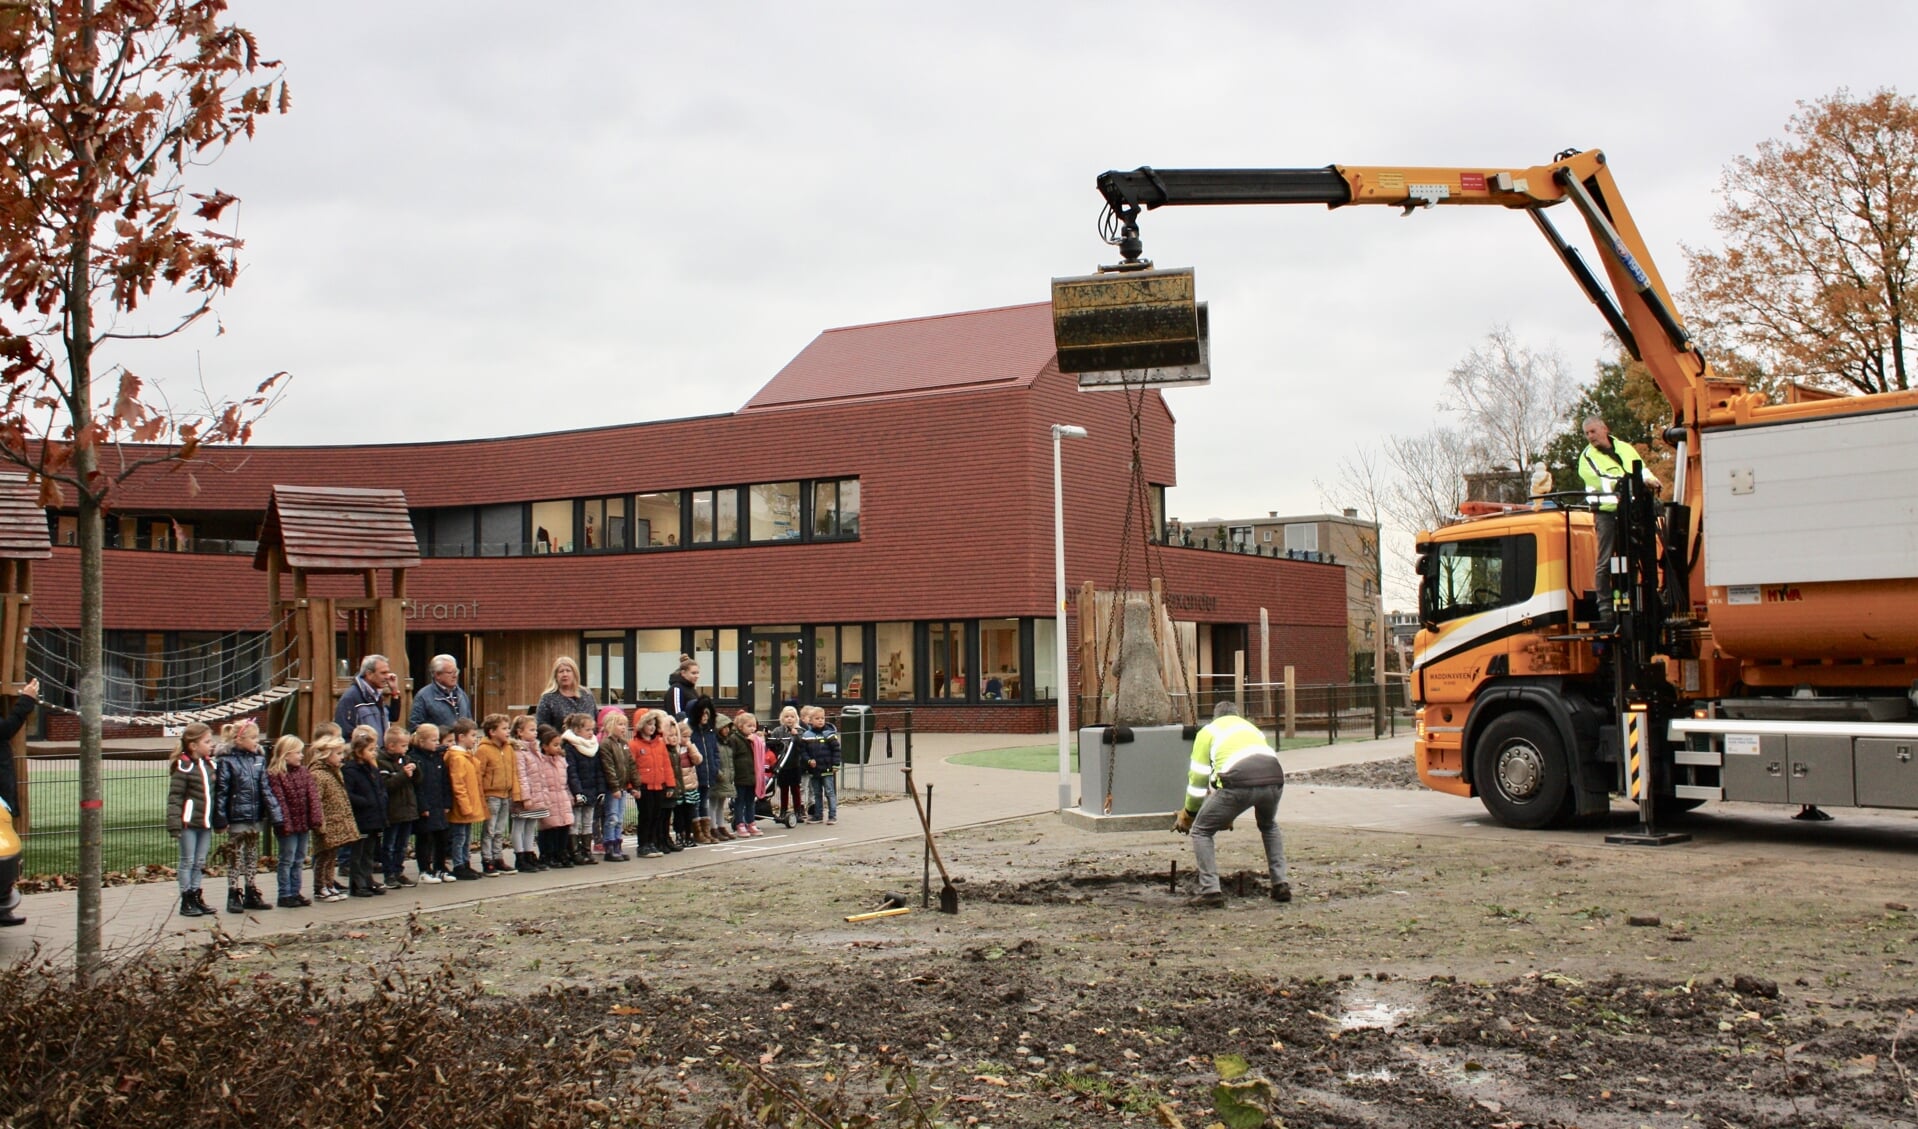 Beertje werd opgewacht door een afvaardiging van kindcentrum Groenoord. (foto: pr)